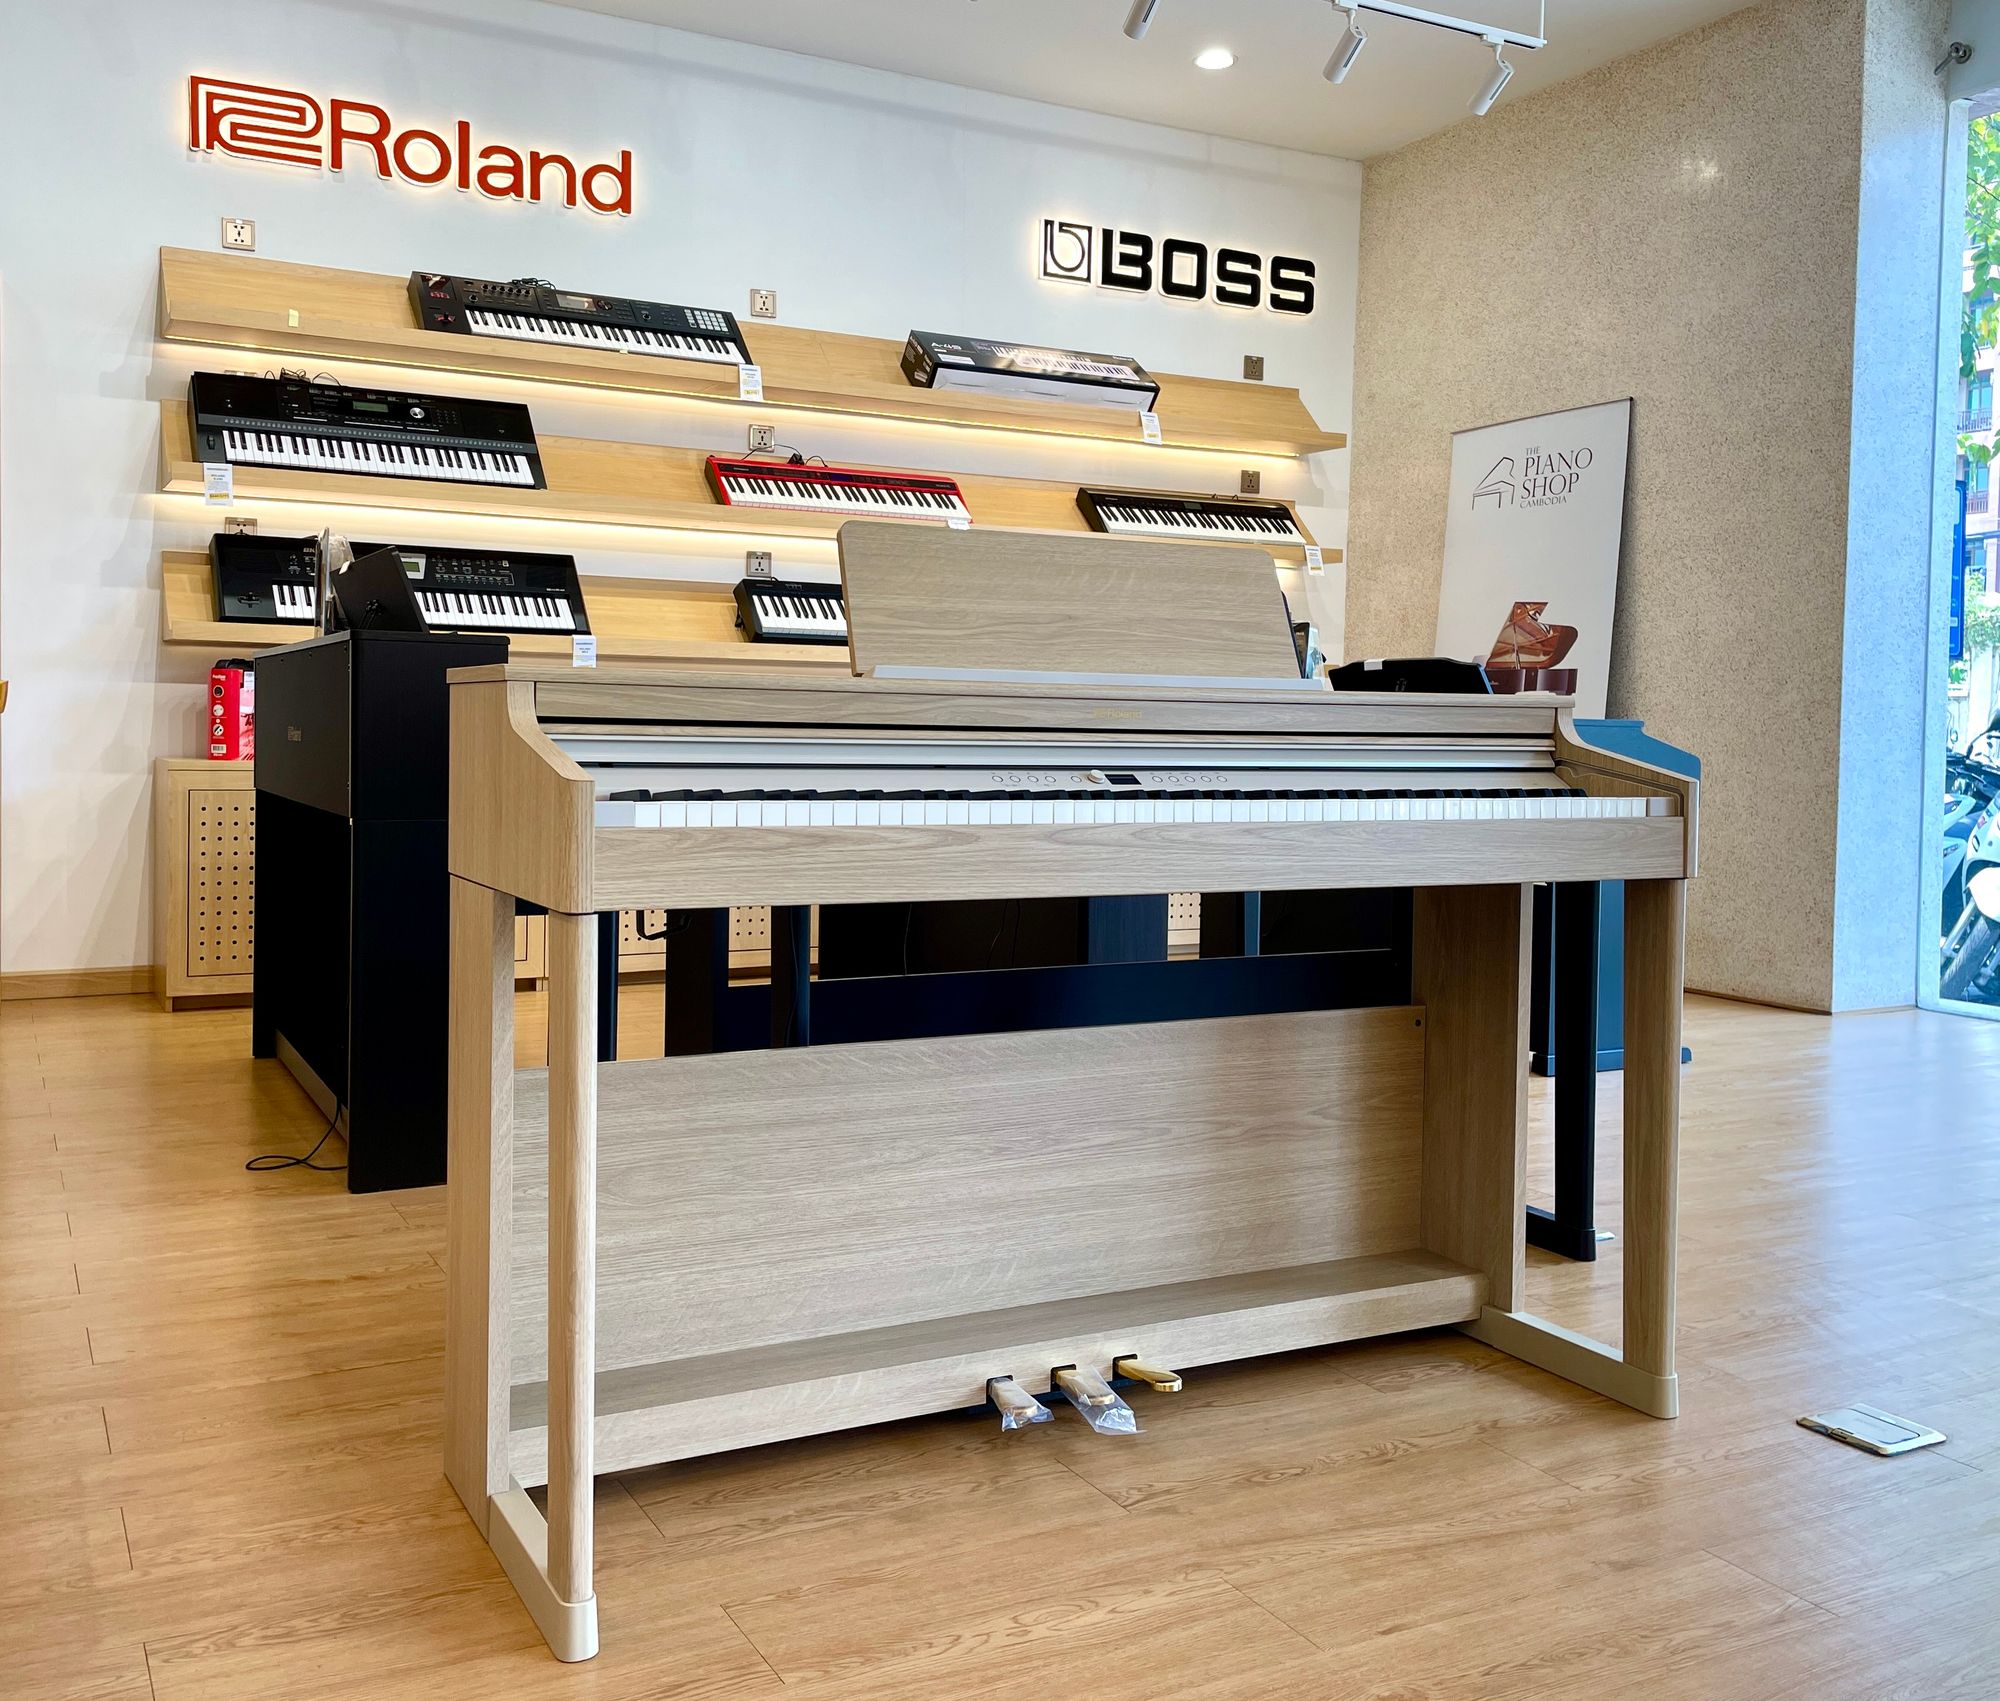 Spotlight: Roland RP-701 Digital Piano